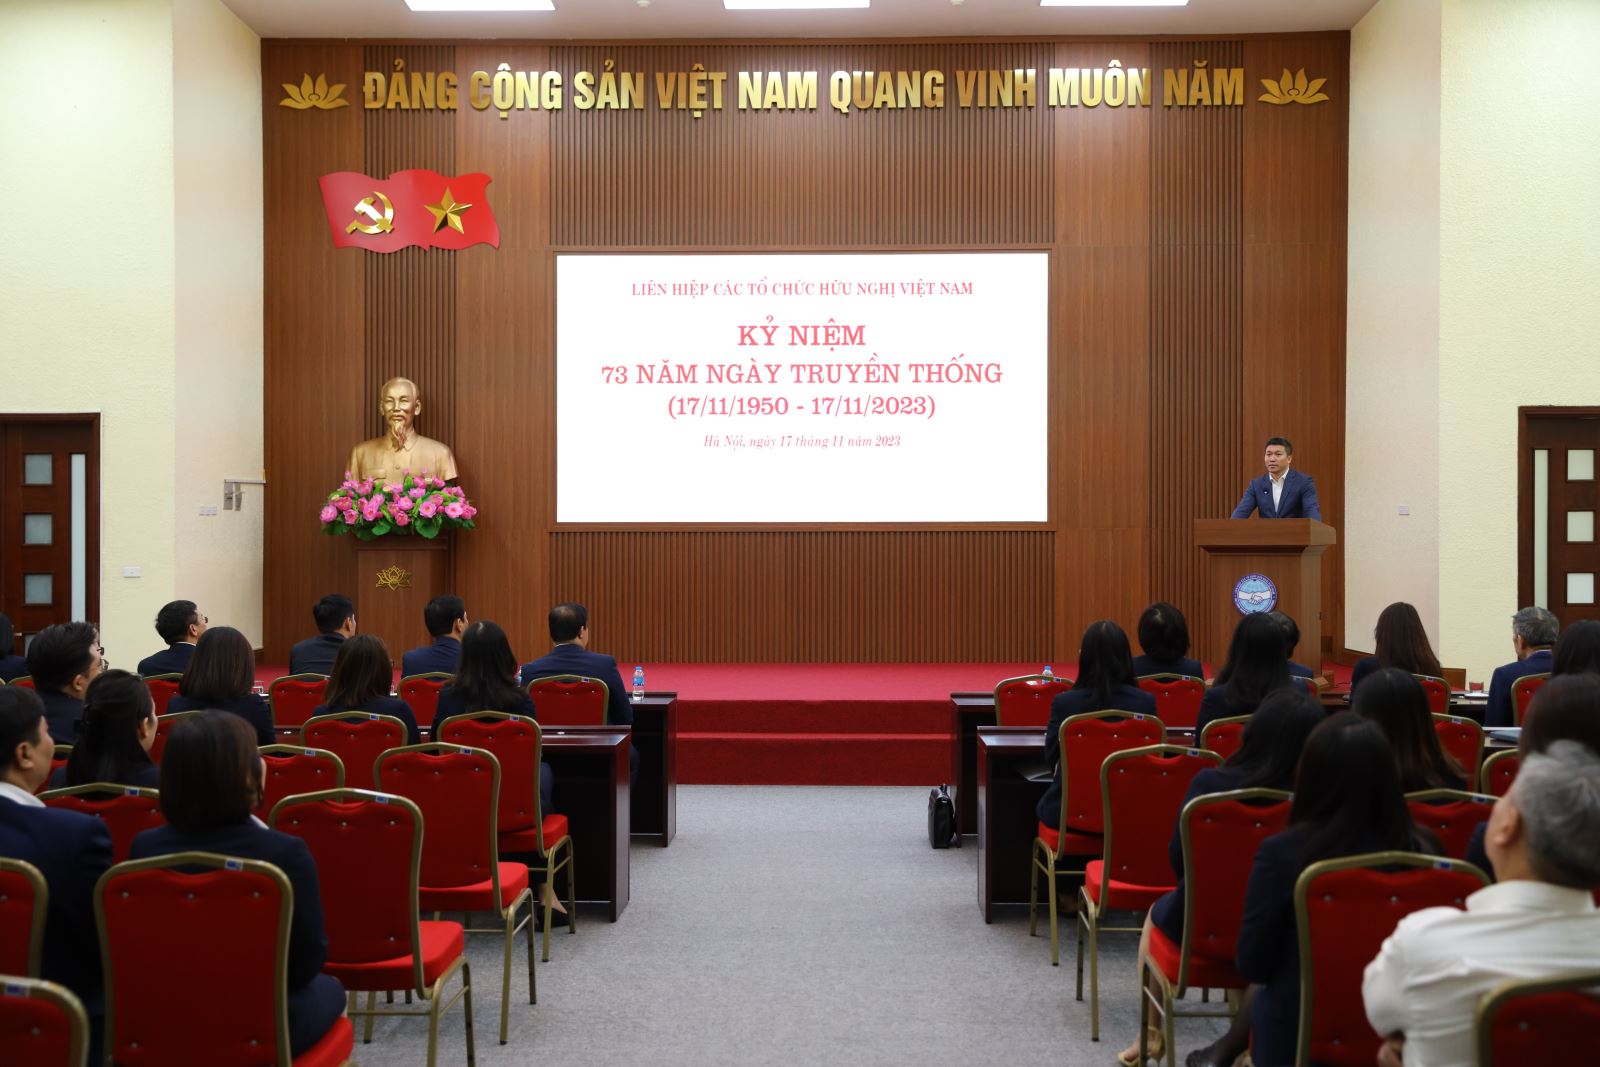 Kỷ niệm 73 năm Ngày truyền thống Liên hiệp các tổ chức hữu nghị Việt Nam